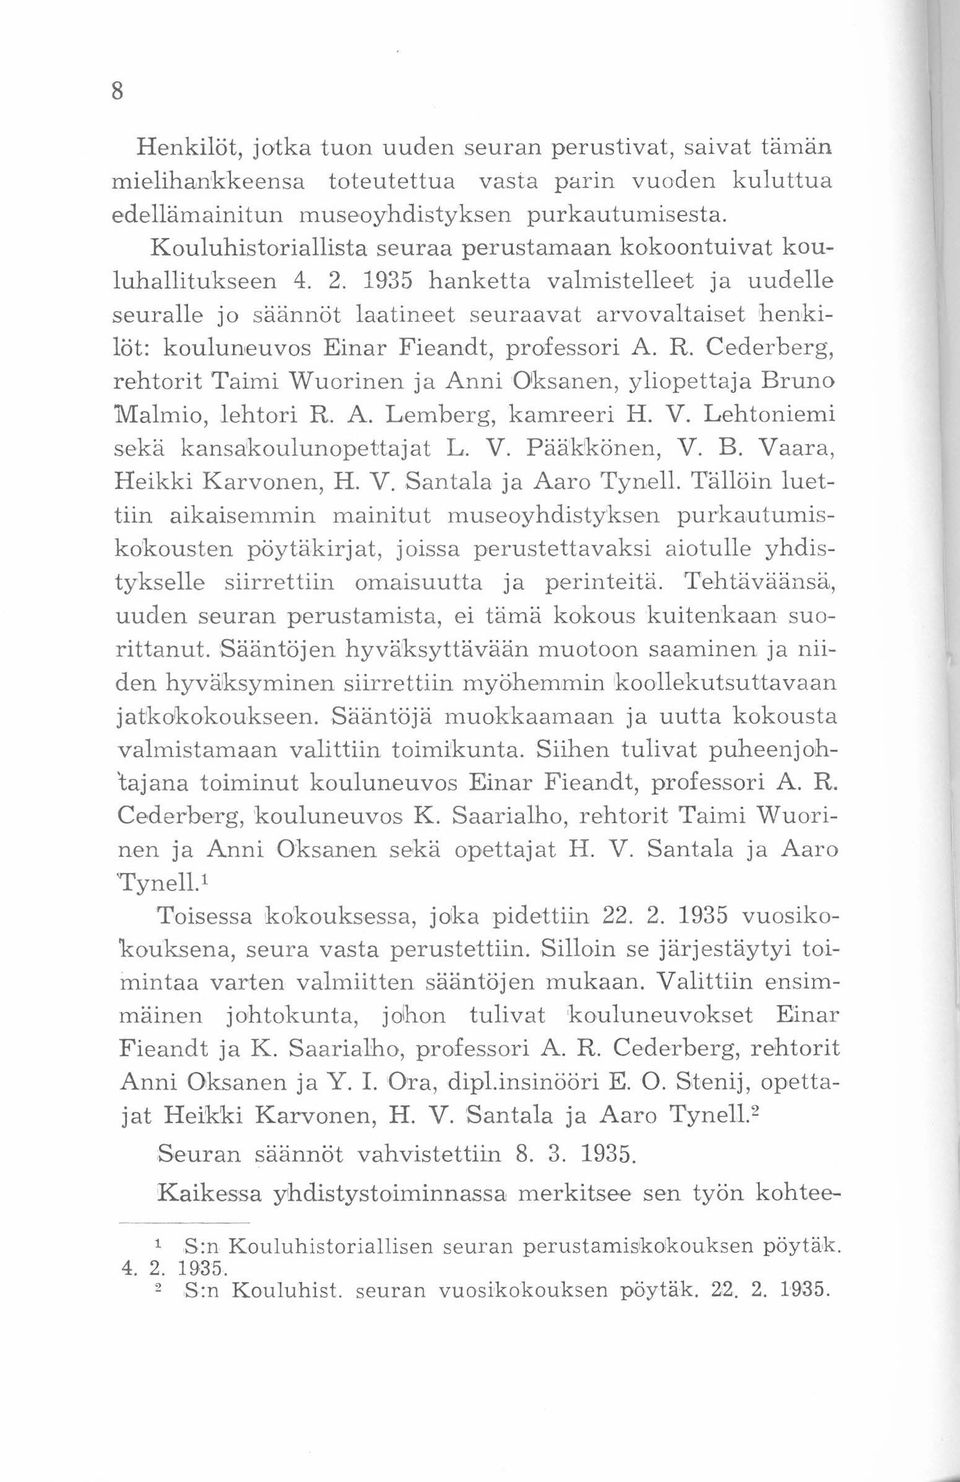 1935 hanketta valmistelleet ja uudelle seuralle jo säännöt laatineet seuraavat arvovaltaiset henkilöt: kouluneuvos Einar Fieandt, professori A. R.